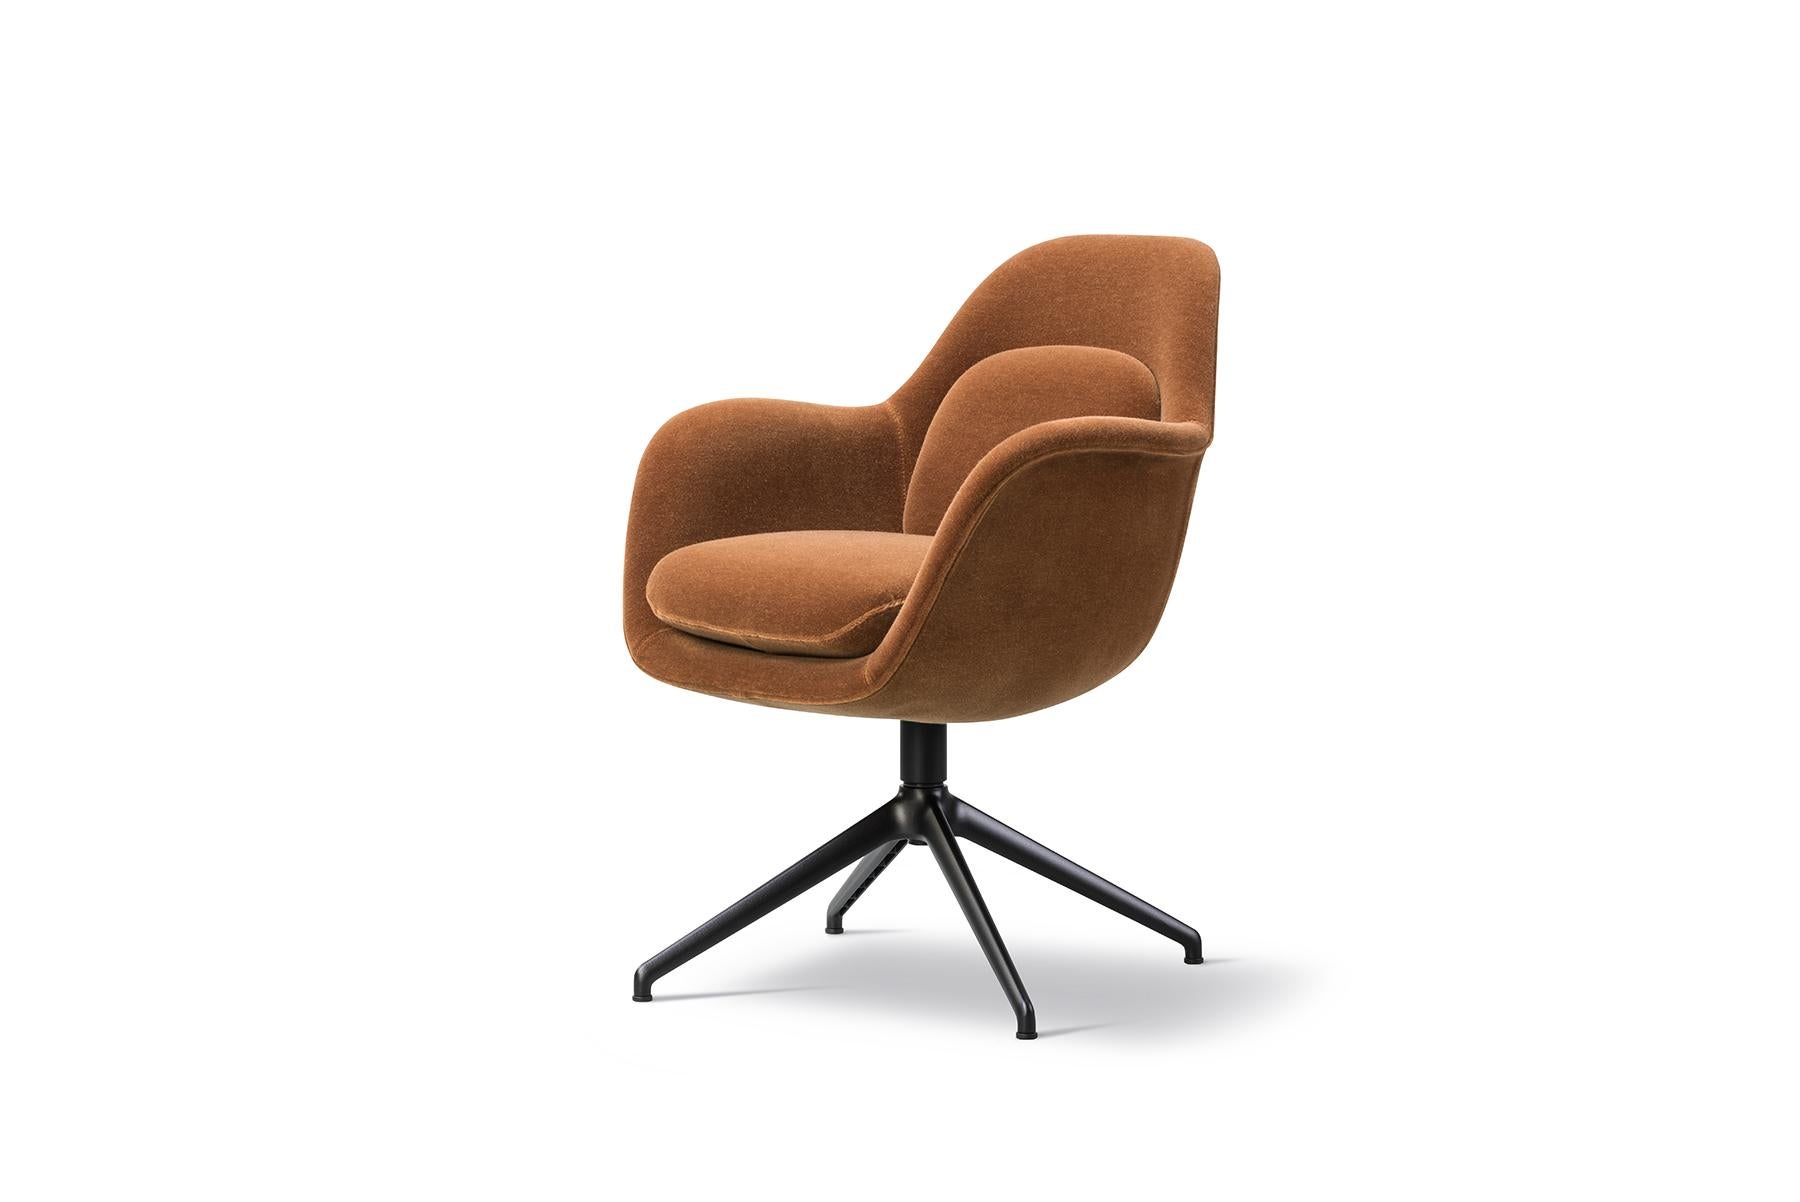 La chaise de salle à manger Space Copenhagen Swoon, base pivotante, est la plus petite version verticale de Swoon, dans une taille encore plus compacte. Avec sa coque singulière fusionnant les accoudoirs, l'assise et le dossier, en plus des coussins